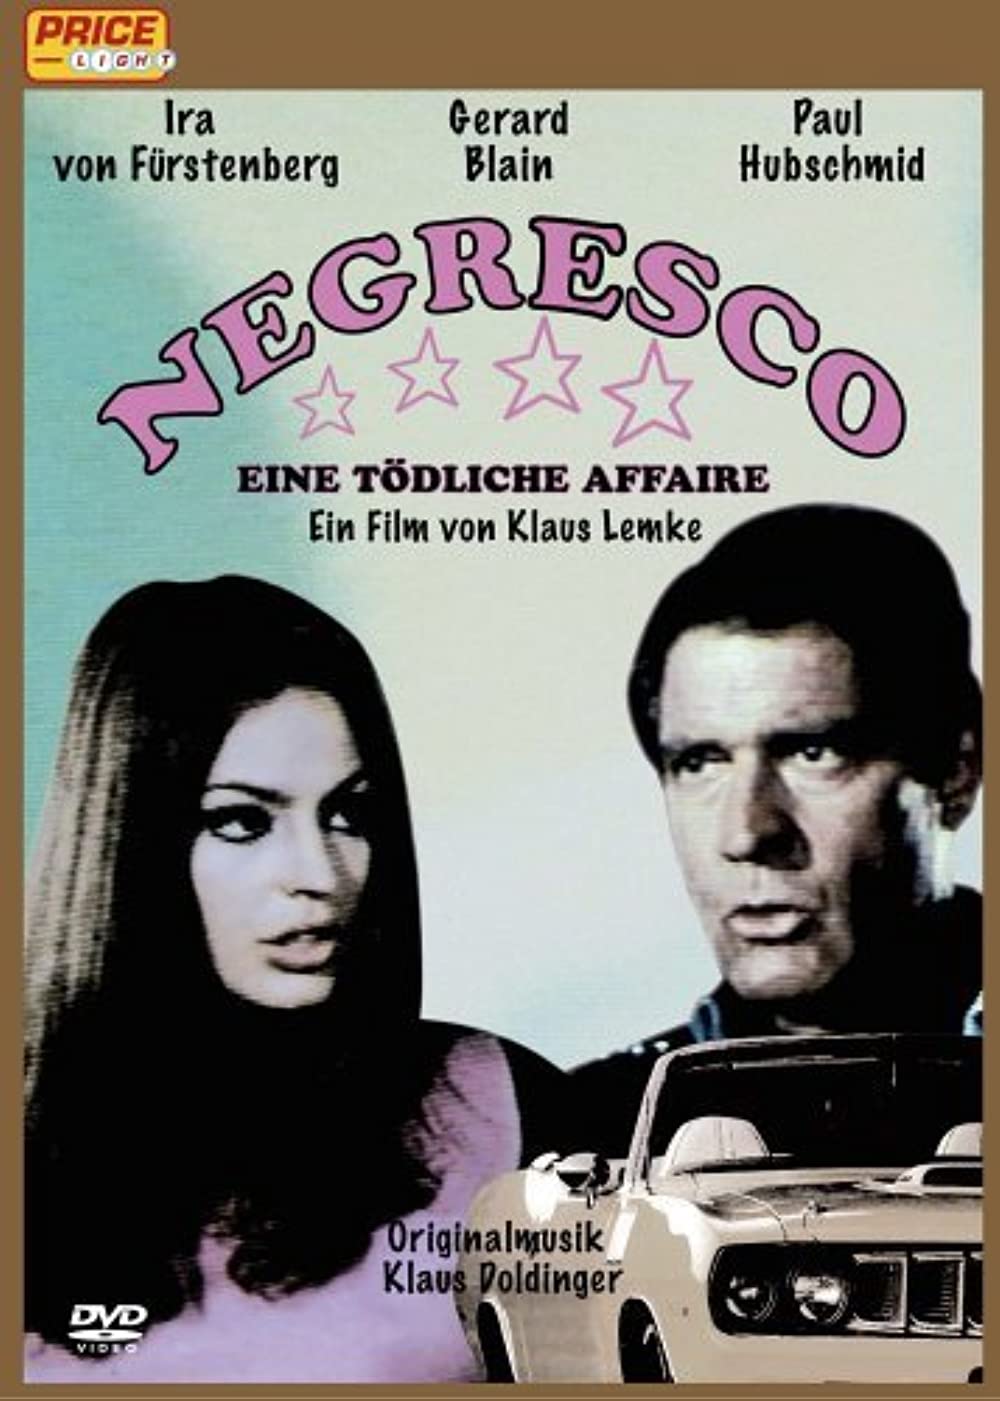 Filmbeschreibung zu Negresco - Eine tödliche Affäre